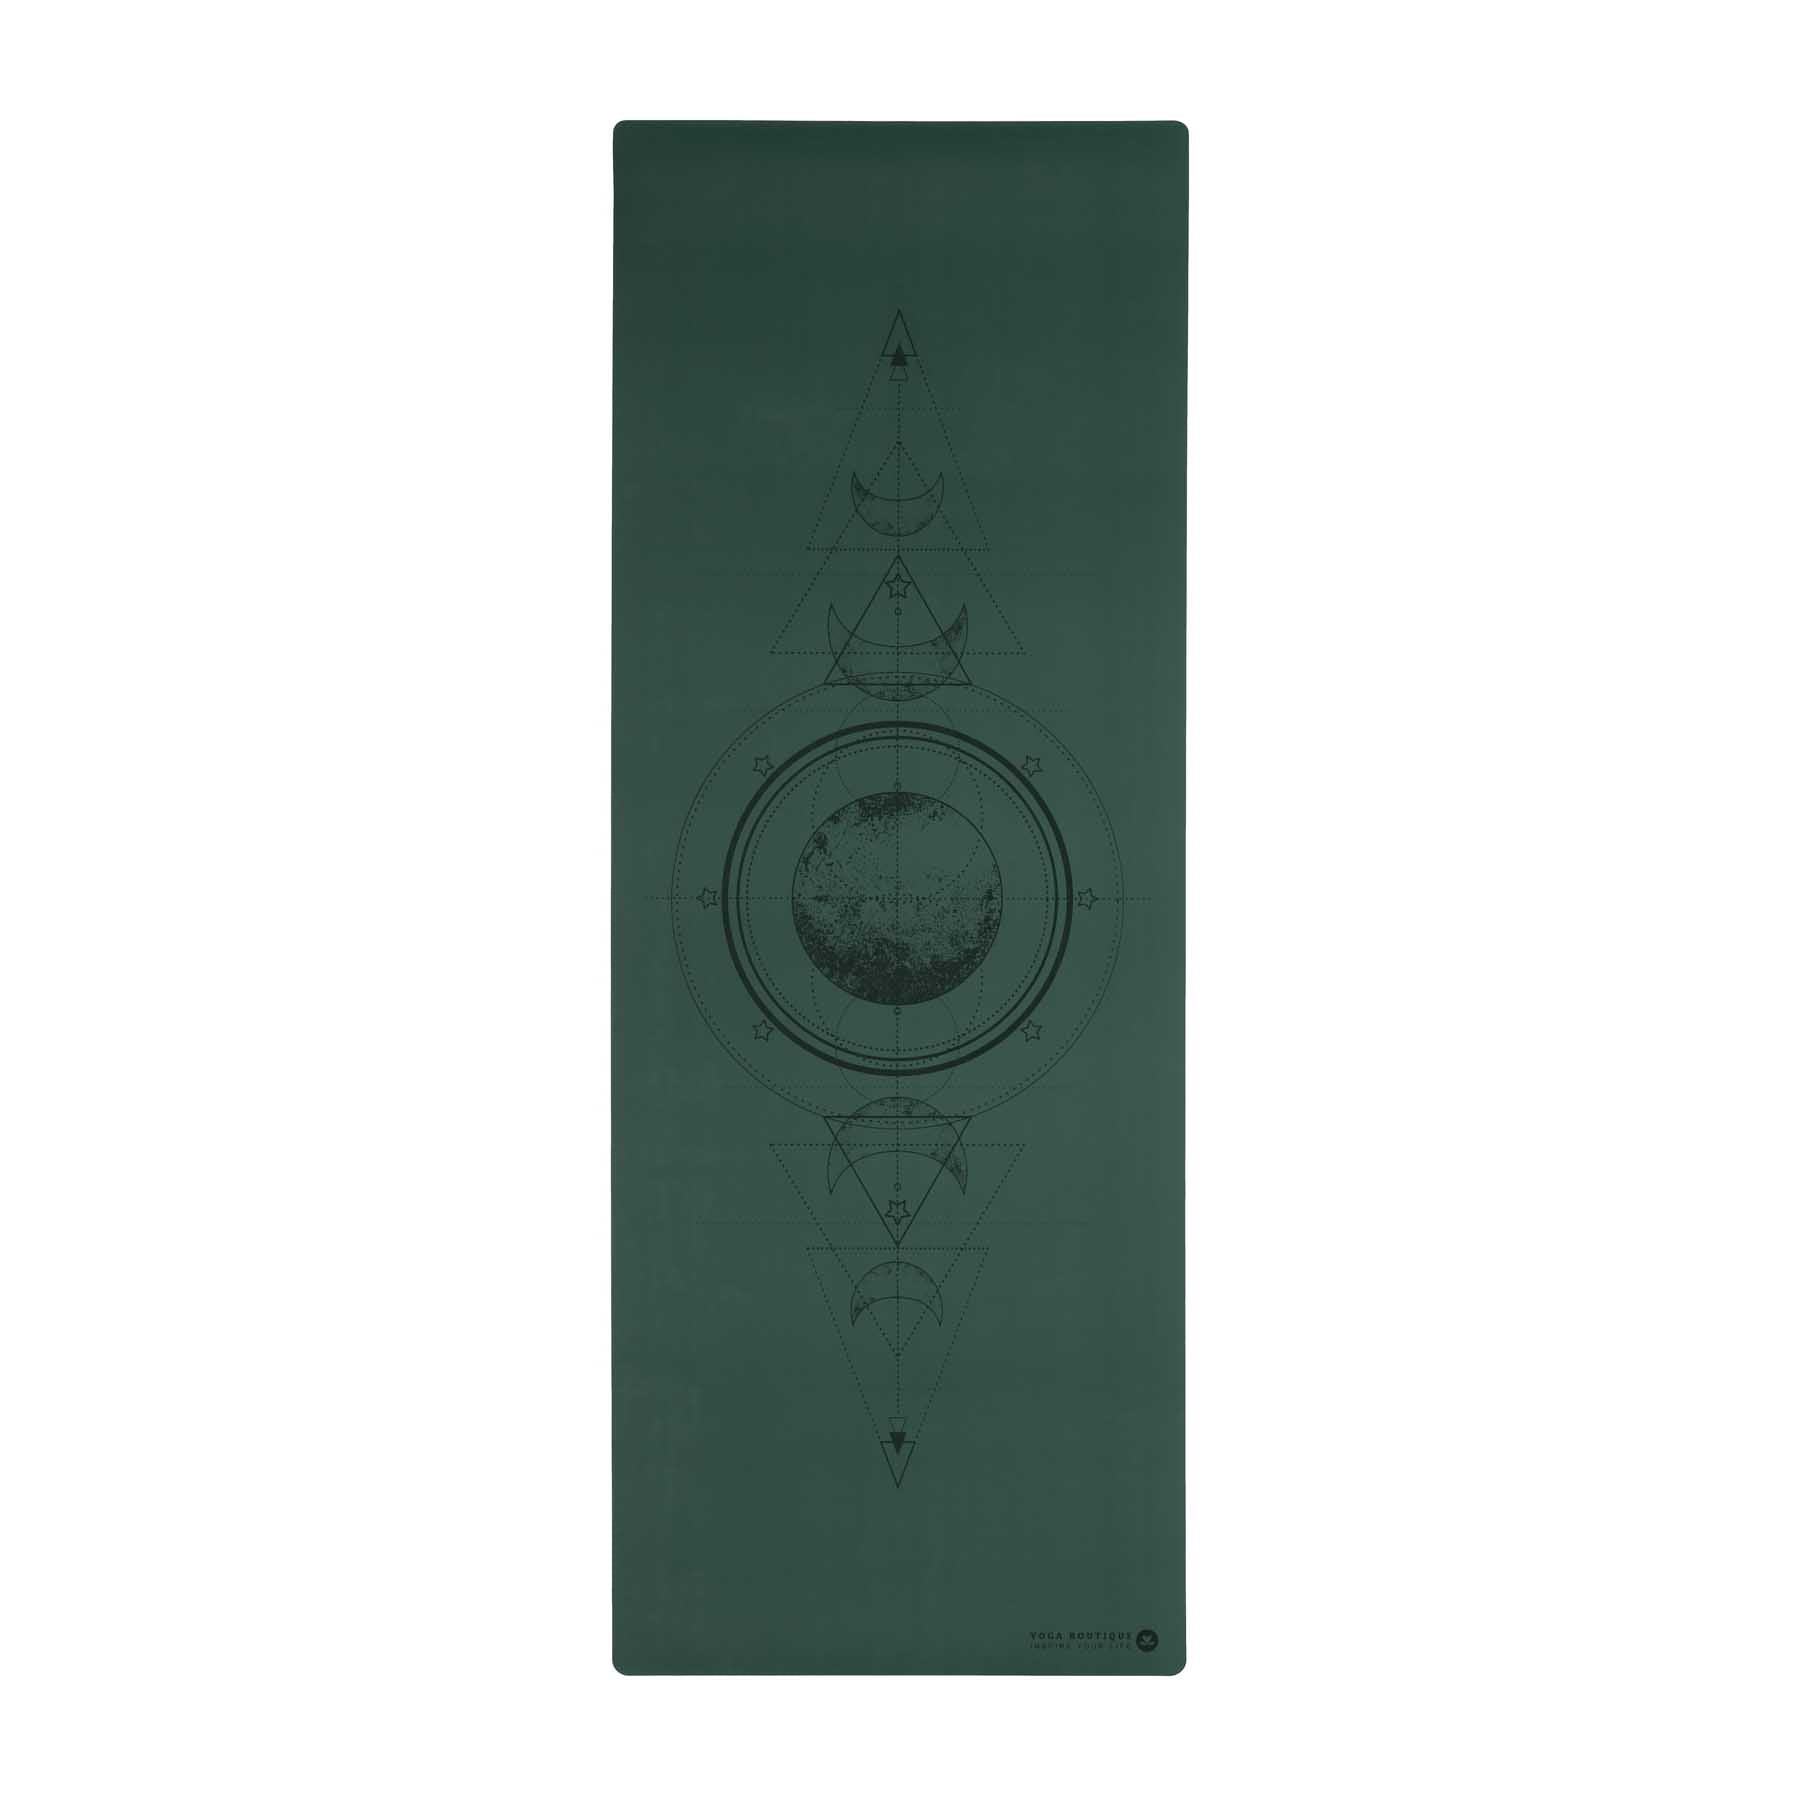 Tapis de yoga SuperGrip 2.0 Moon vert foncé en caoutchouc naturel super antidérapant avec lignes d'aide pour un alignement correct